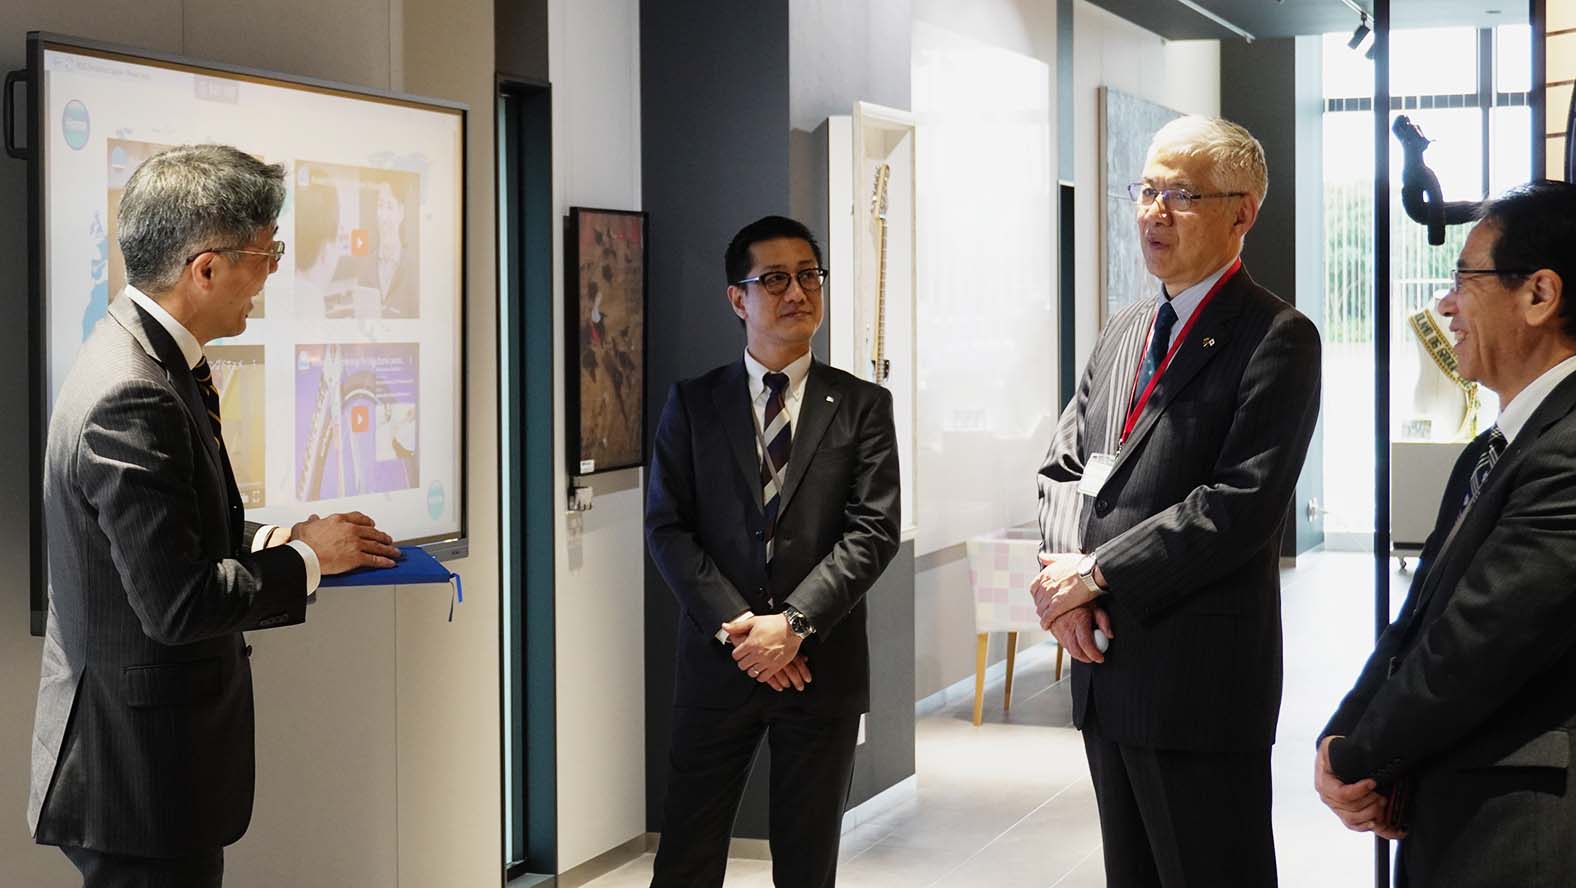 سفير سفارة اليابان في ليتوانيا يزور المكتب الرئيسي لشركة Roland DG